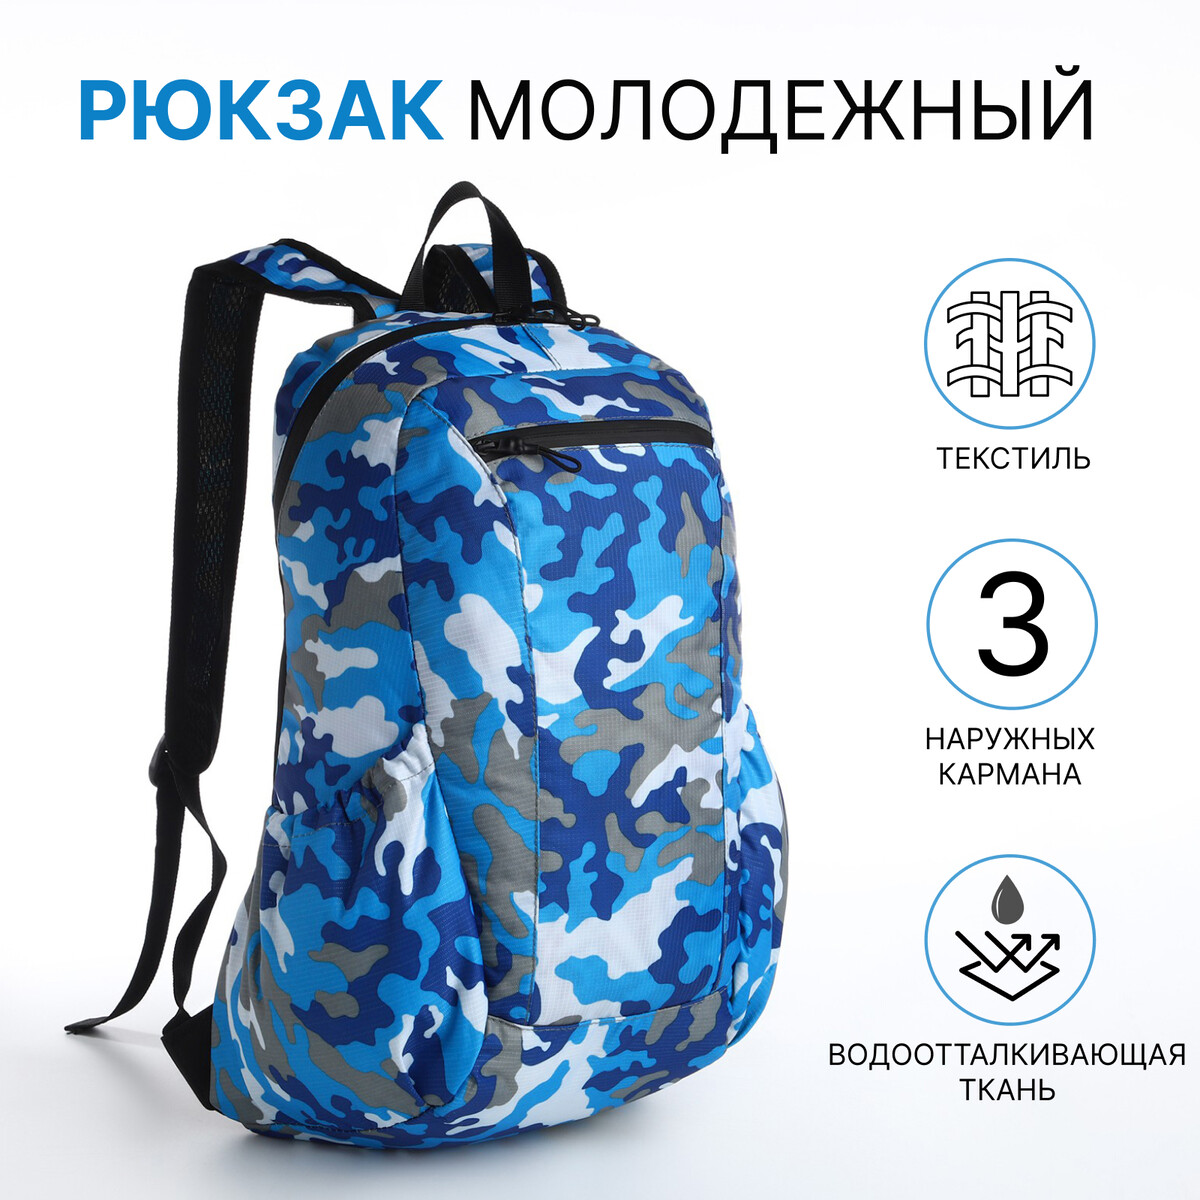 Рюкзак молодежный, водонепроницаемый на молнии, 3 кармана, цвет голубой/синий рюкзак молодежный из текстиля на молнии 3 кармана сумка держатель для чемодана синий